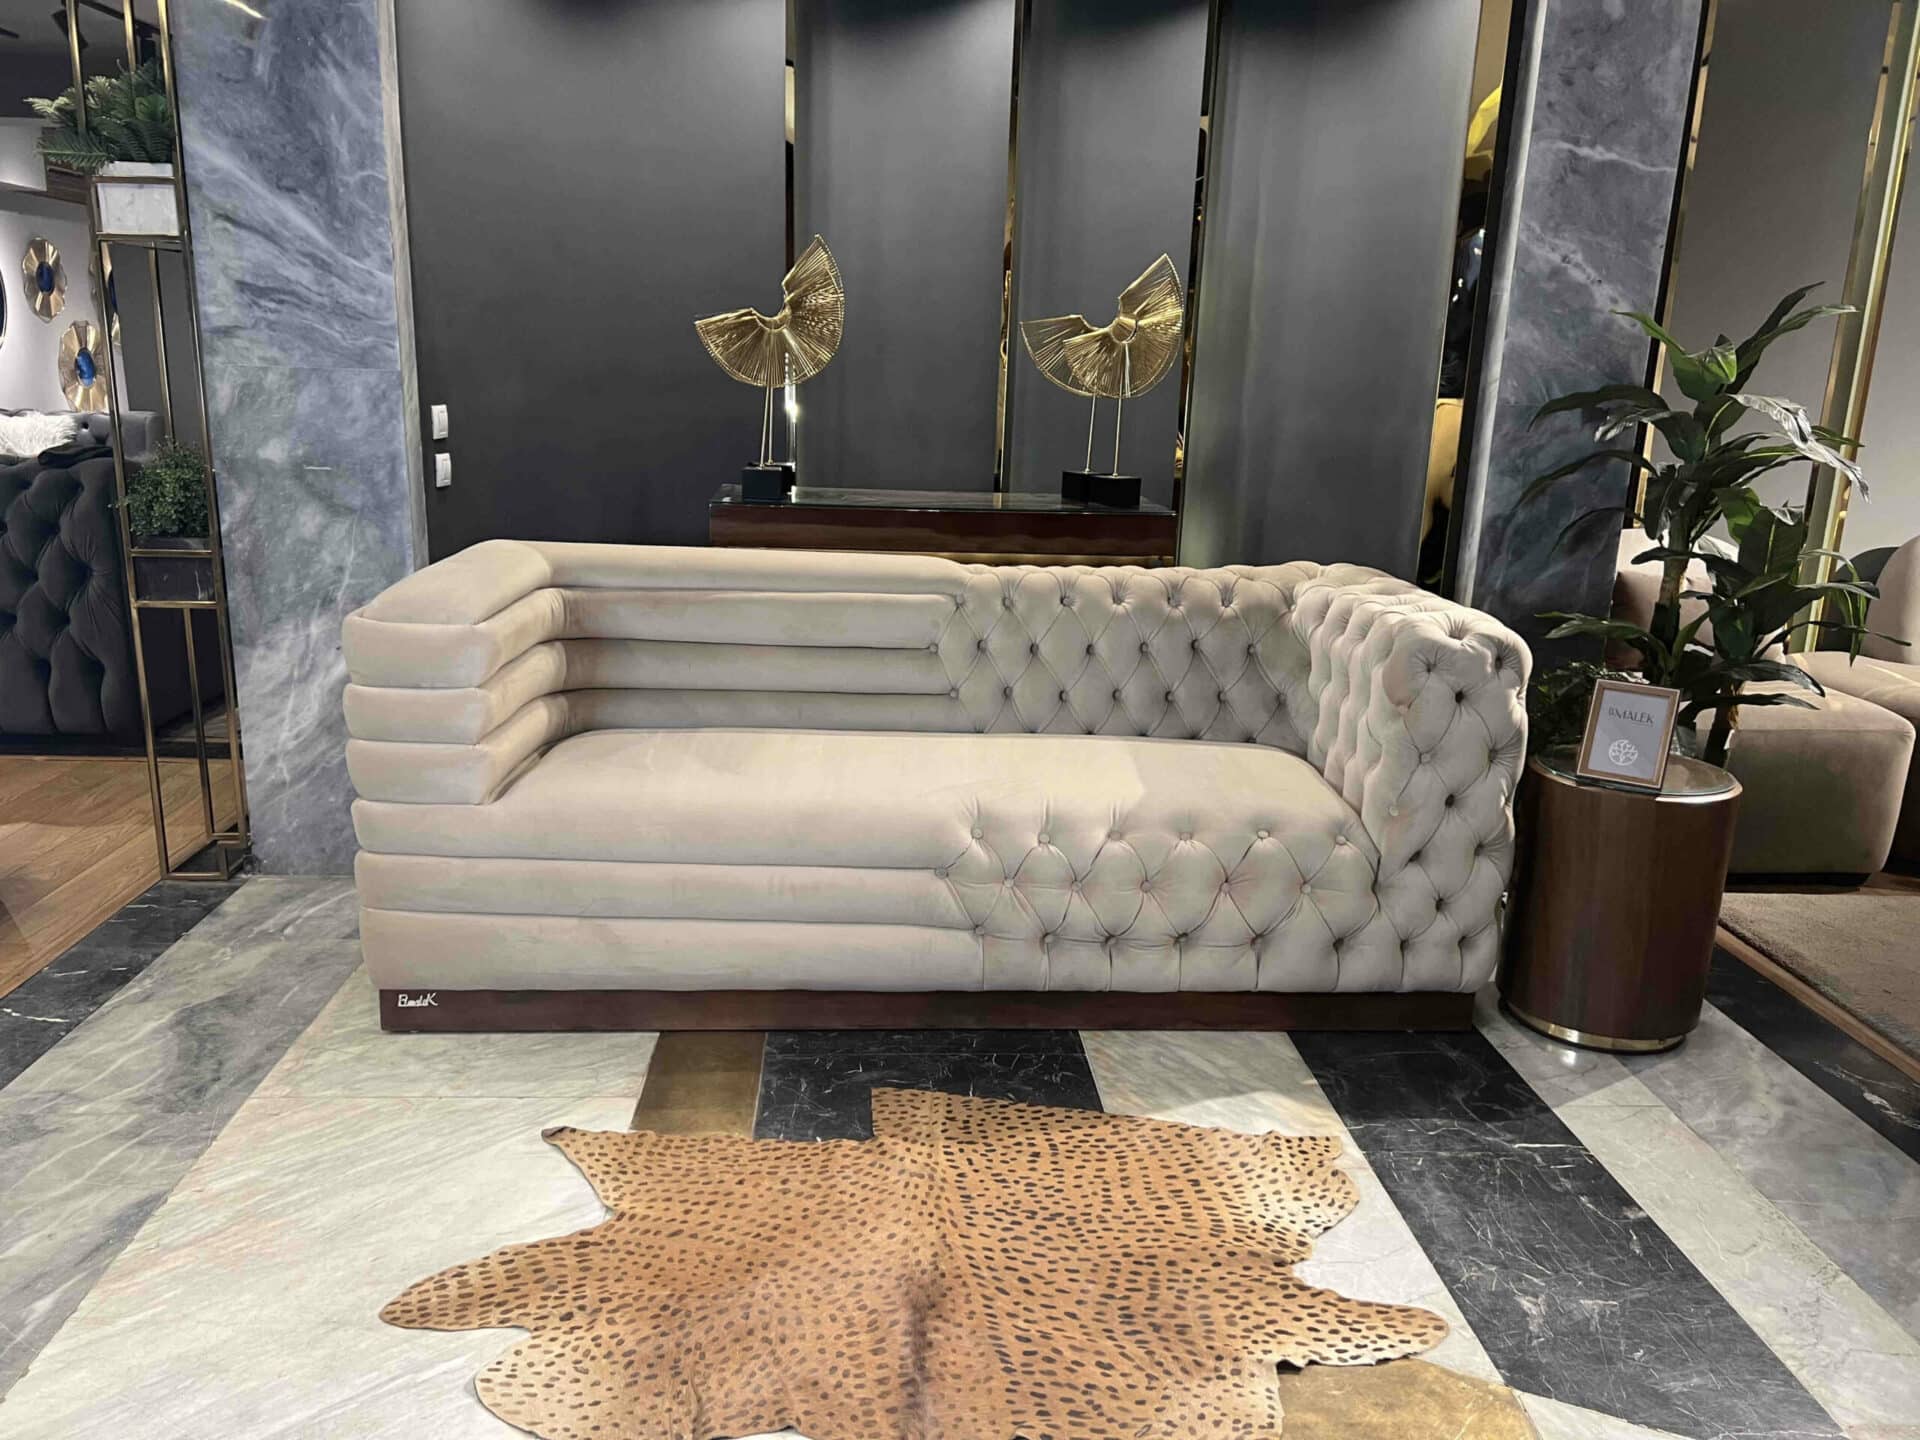 Best Sofas Cairo, modren luxury Living Room cairo, Best Living Room design, luxury Living Rooms Ideas Egypt